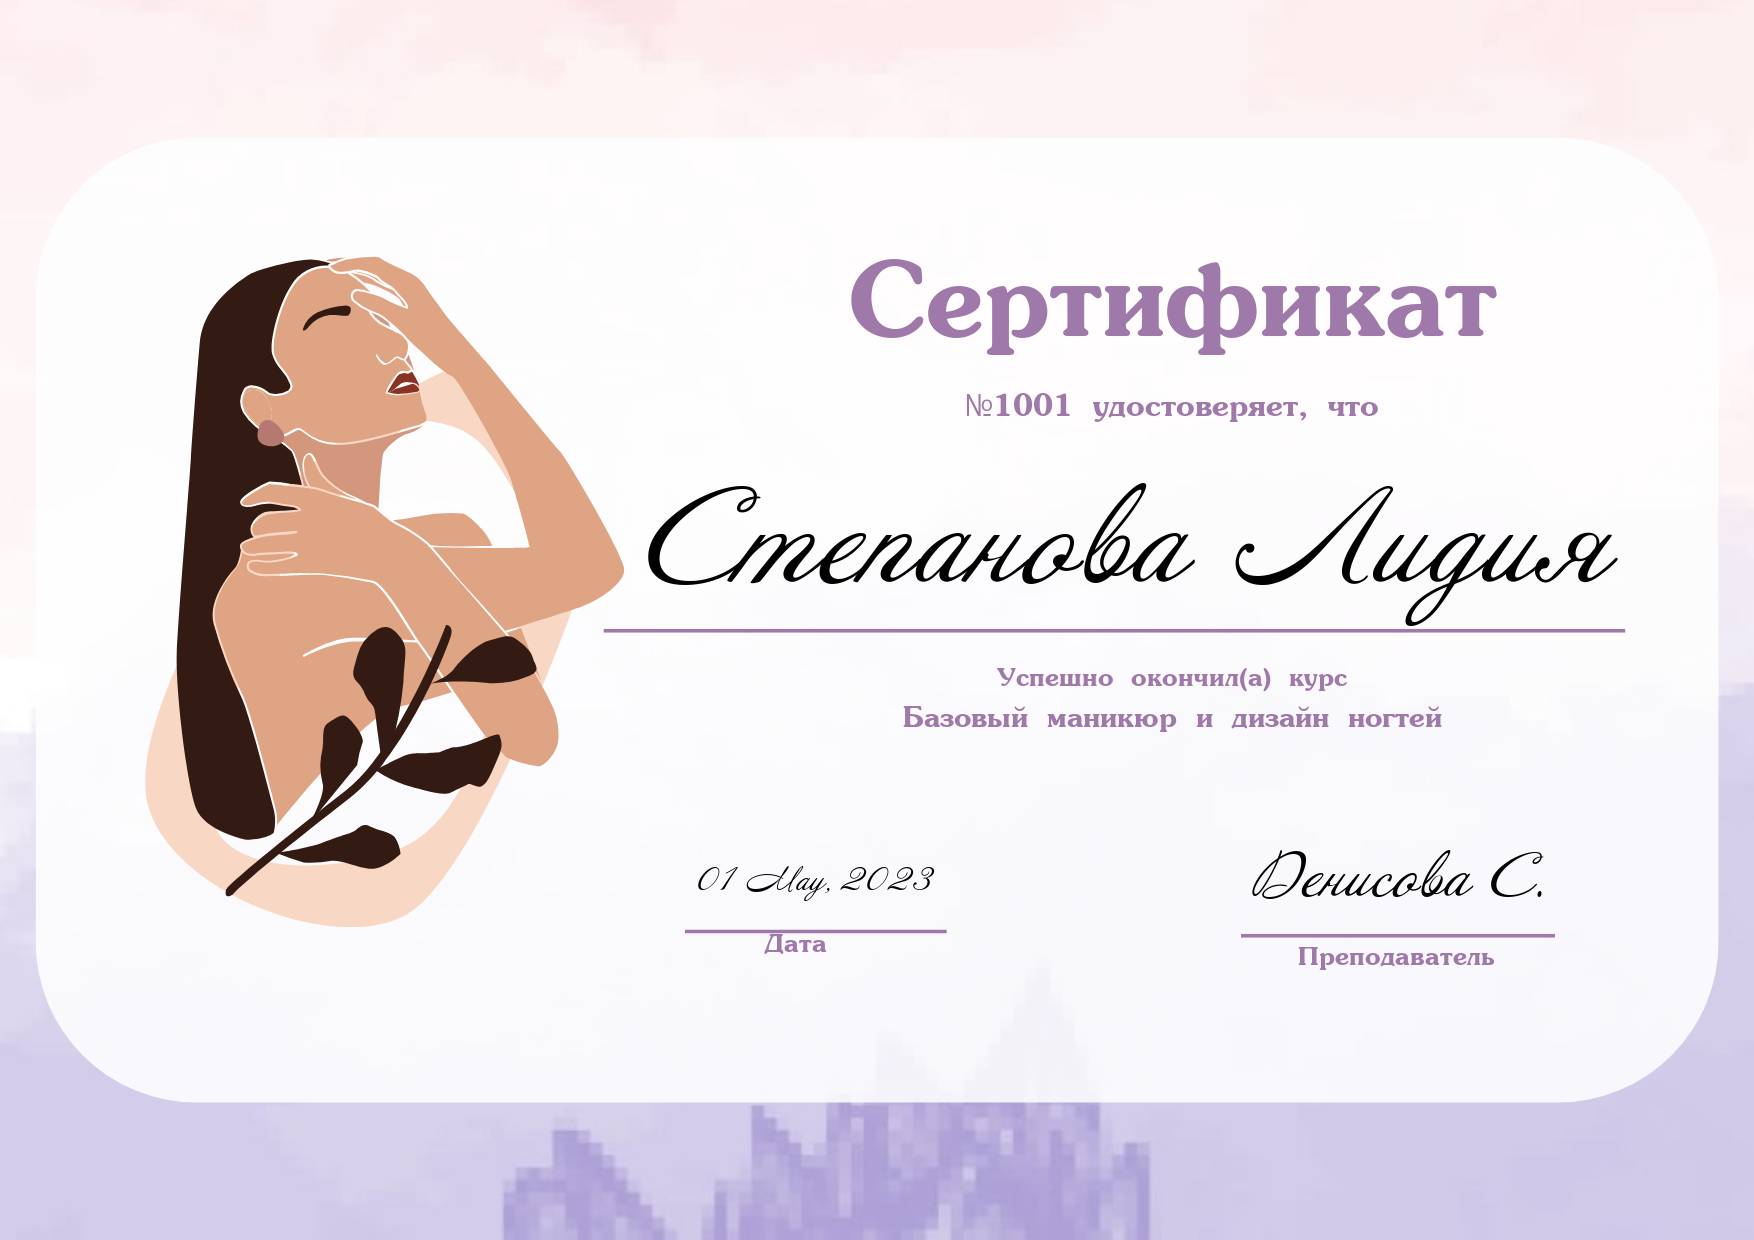 Изящный женственный подарочный сертификат с нарисованной девушкой  и изящным шрифтом для салона красоты